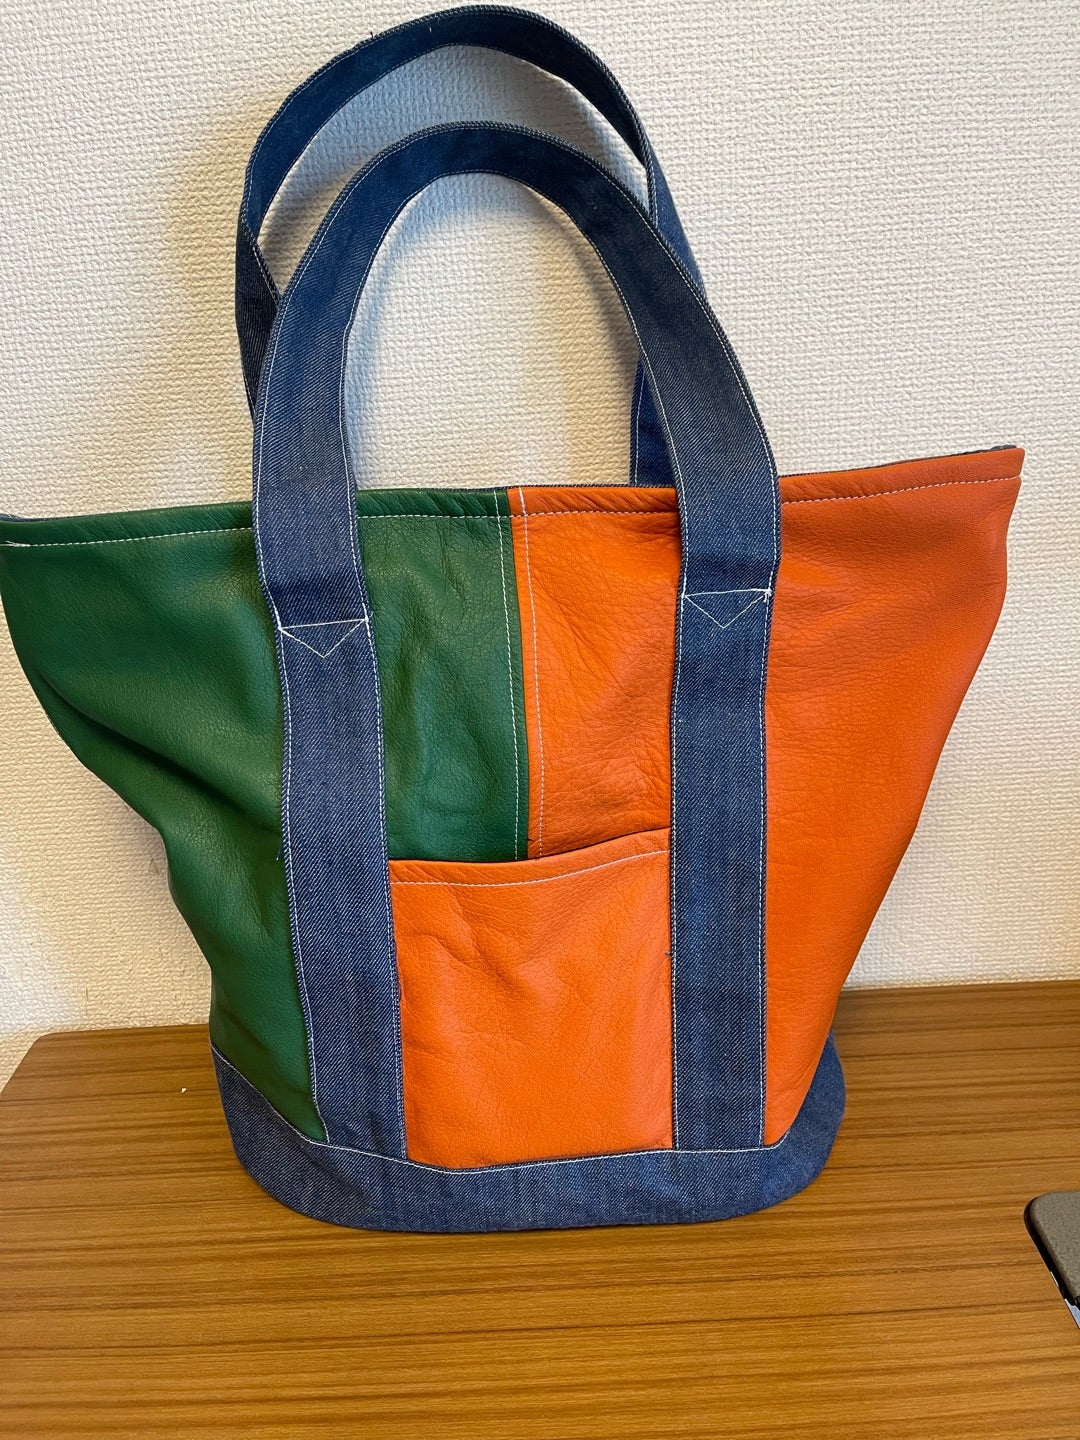 レザーのバッグを作りました【大阪梅田プライベート占いサロン侑詩徹占のブログ】